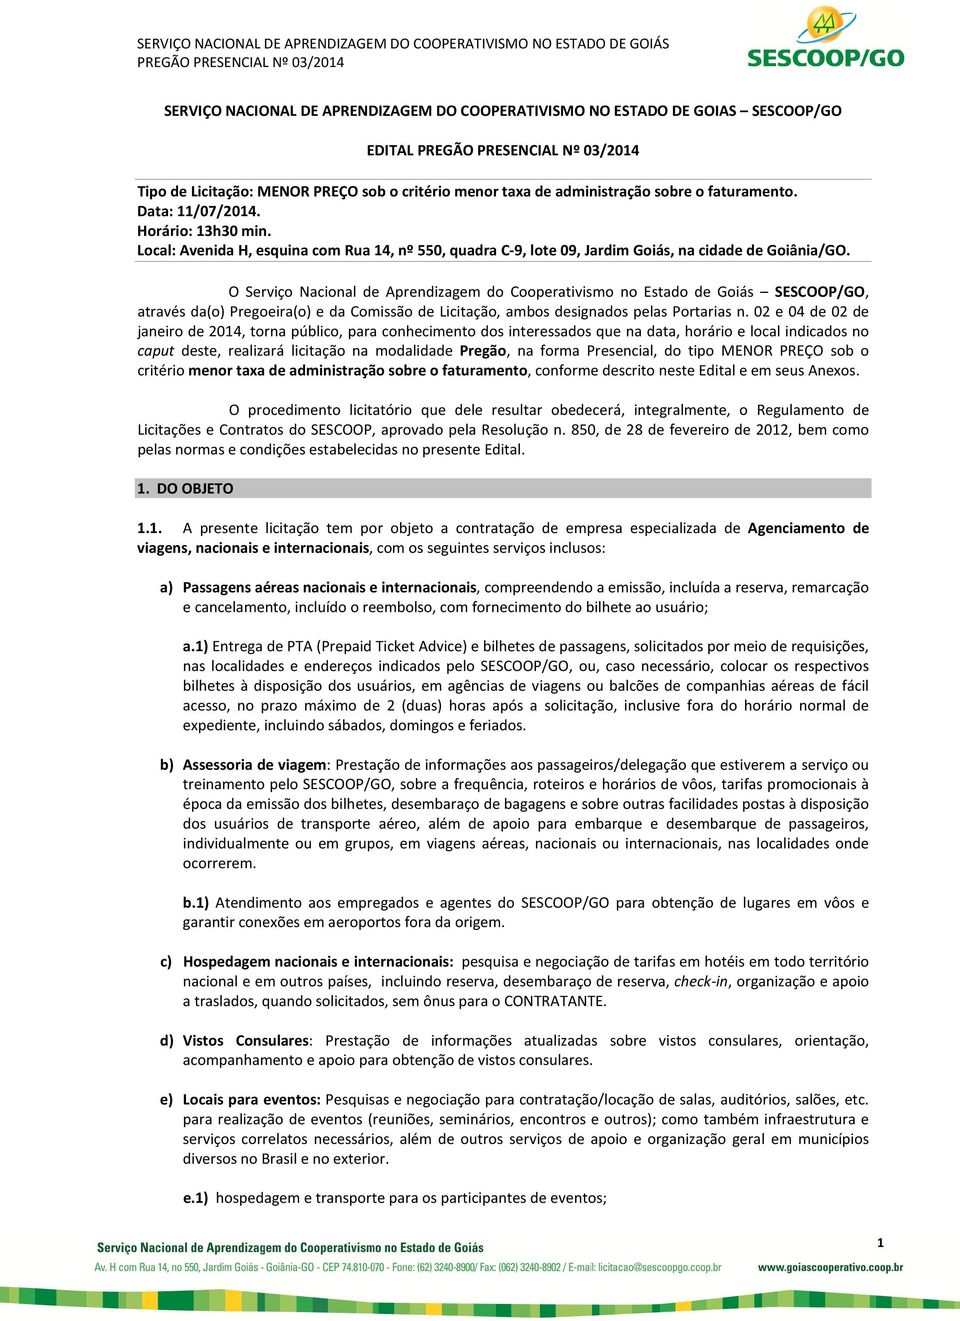 O Serviço Nacional de Aprendizagem do Cooperativismo no Estado de Goiás SESCOOP/GO, através da(o) Pregoeira(o) e da Comissão de Licitação, ambos designados pelas Portarias n.